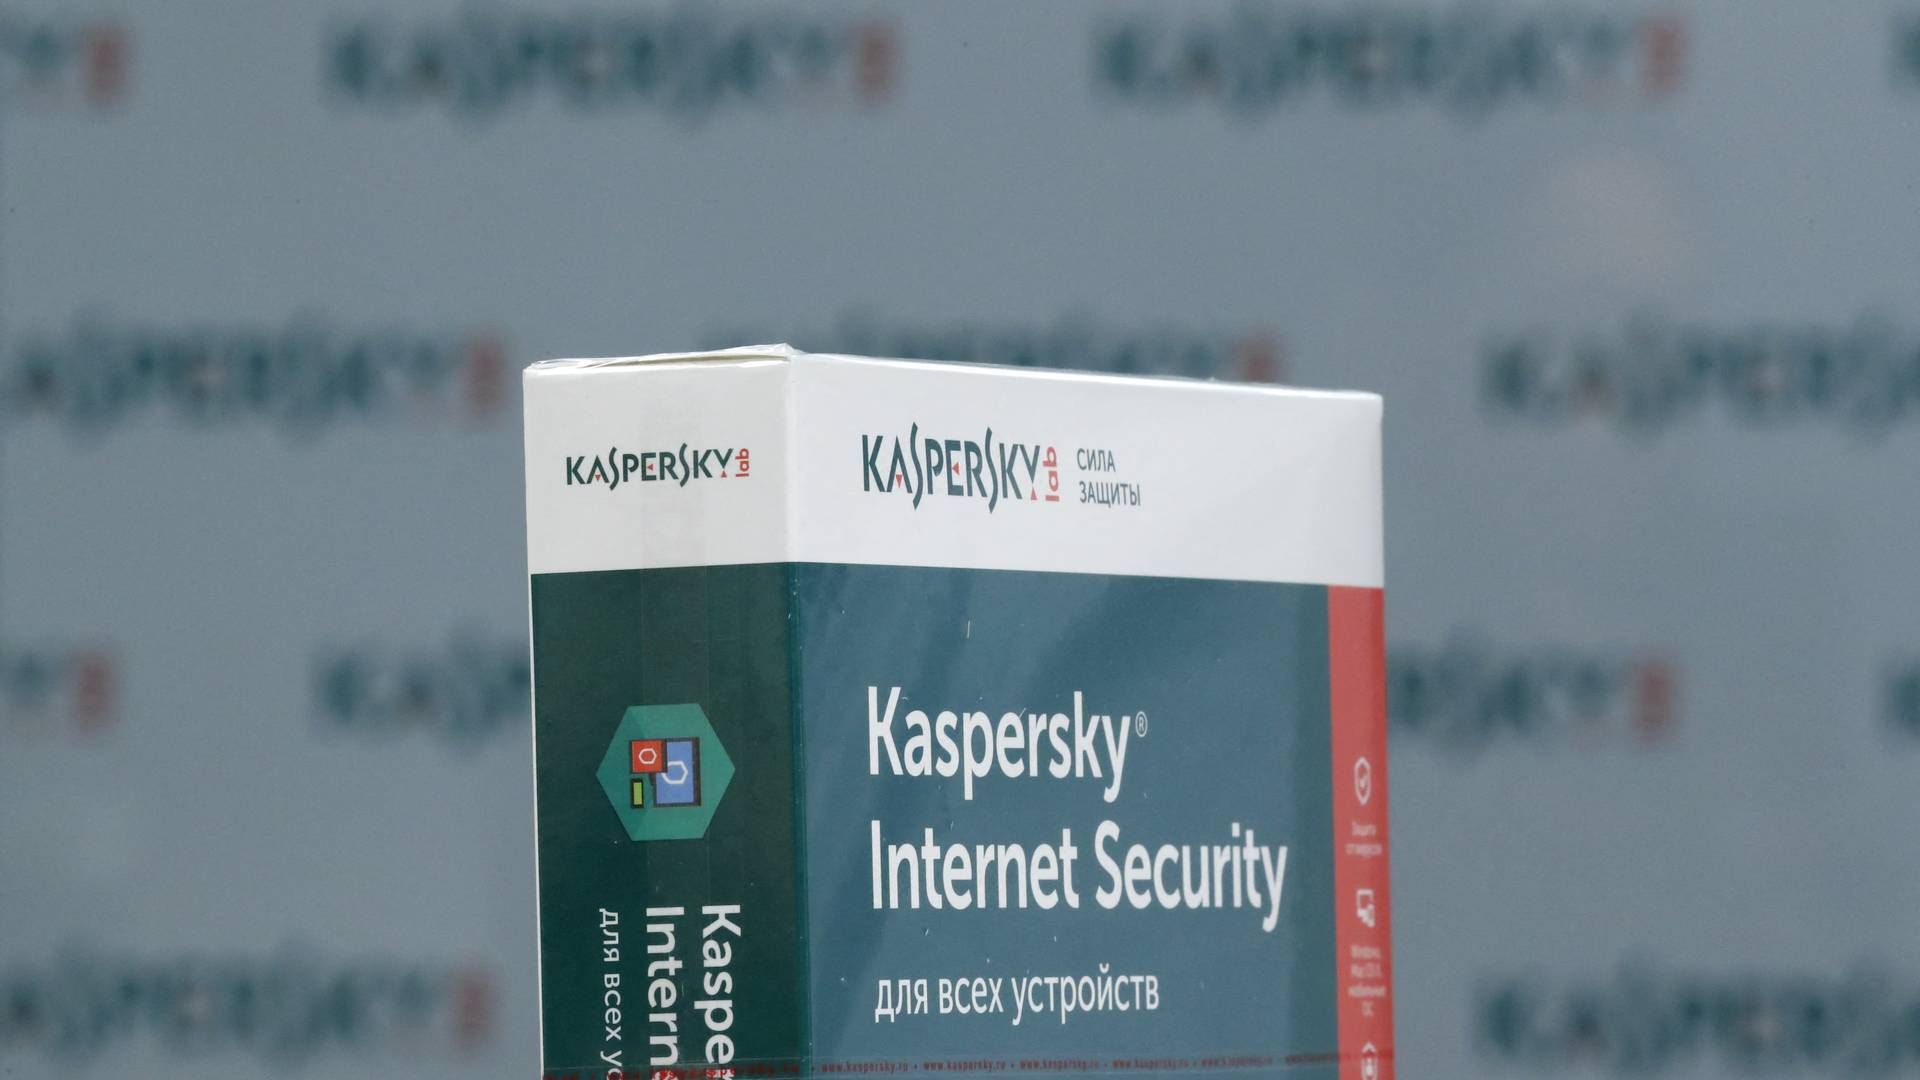 Forbuddet mod salg til nye kunder træder i kraft 20. juli. Kaspersky må levere softwareopdateringer til eksisterende amerikanske kunder indtil 29. september. | Foto: Maxim Shemetov